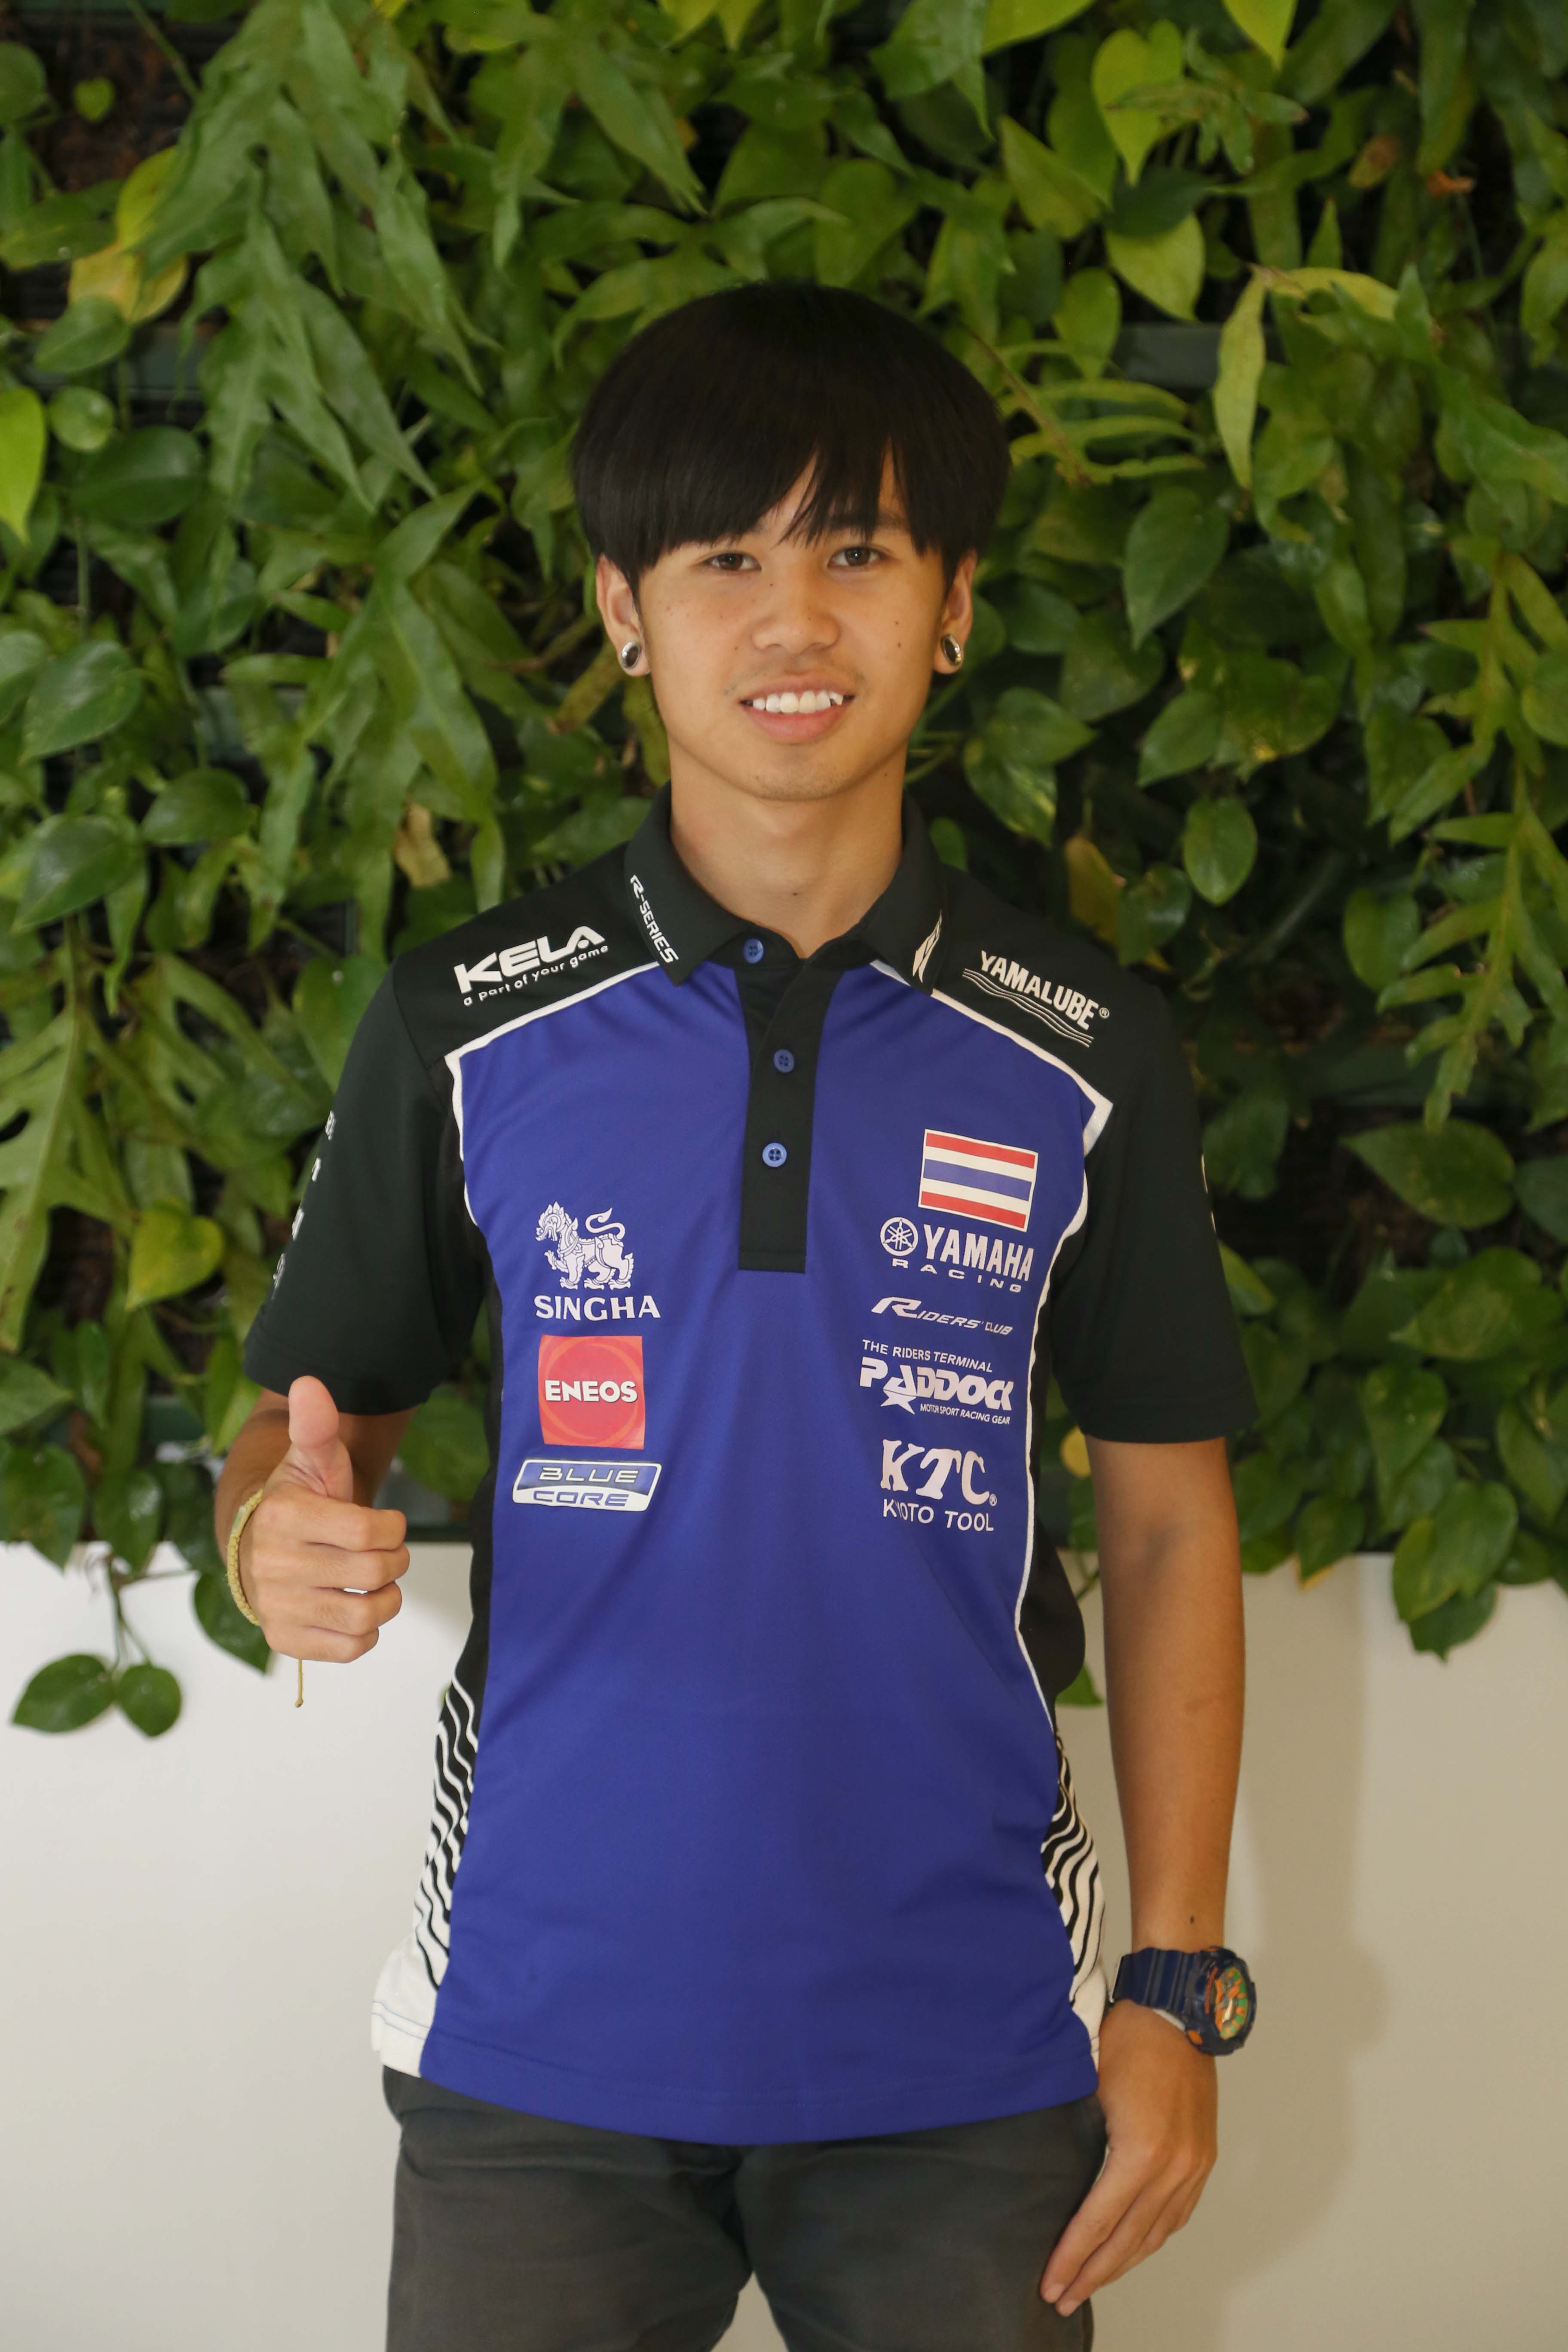 07 ยามาฮ่าต้อนรับฮีโร่นักบิดไทย หลังคว้าชัยแบบดับเบิ้ลโพเดี้ยม ศึกชิงแชมป์เอเชียที่อินโดนีเซีย